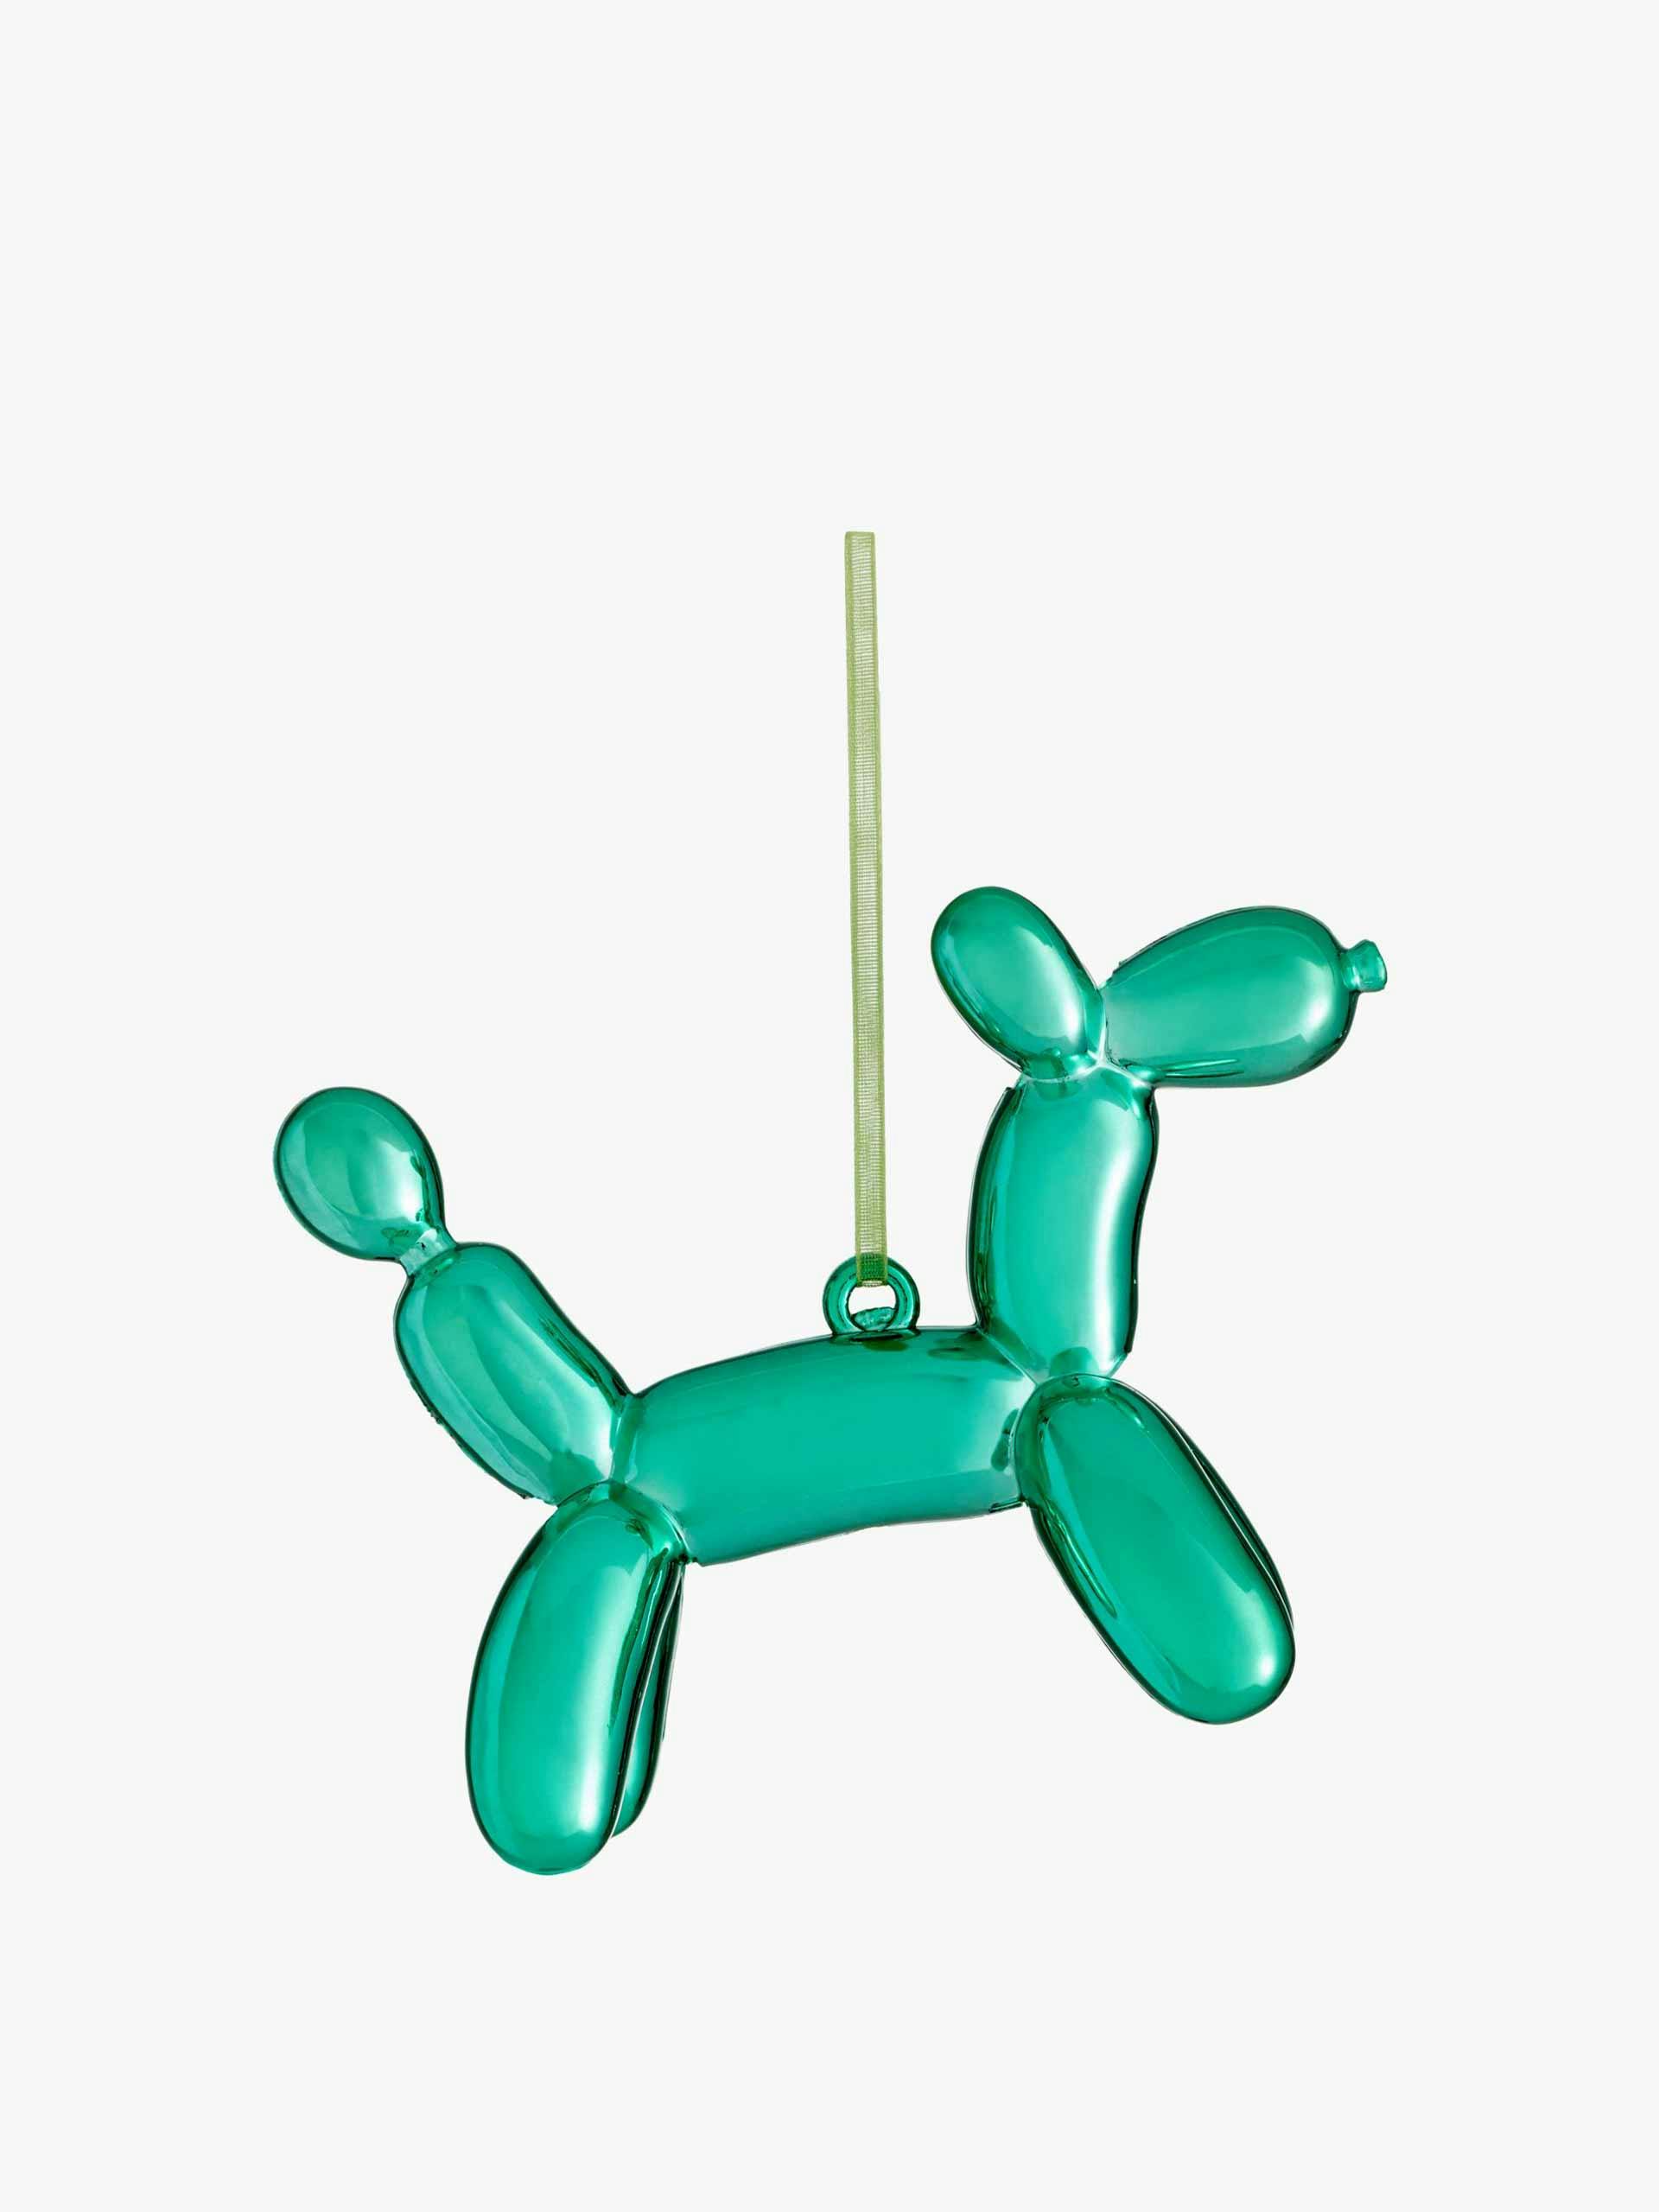 Balloon dog bauble